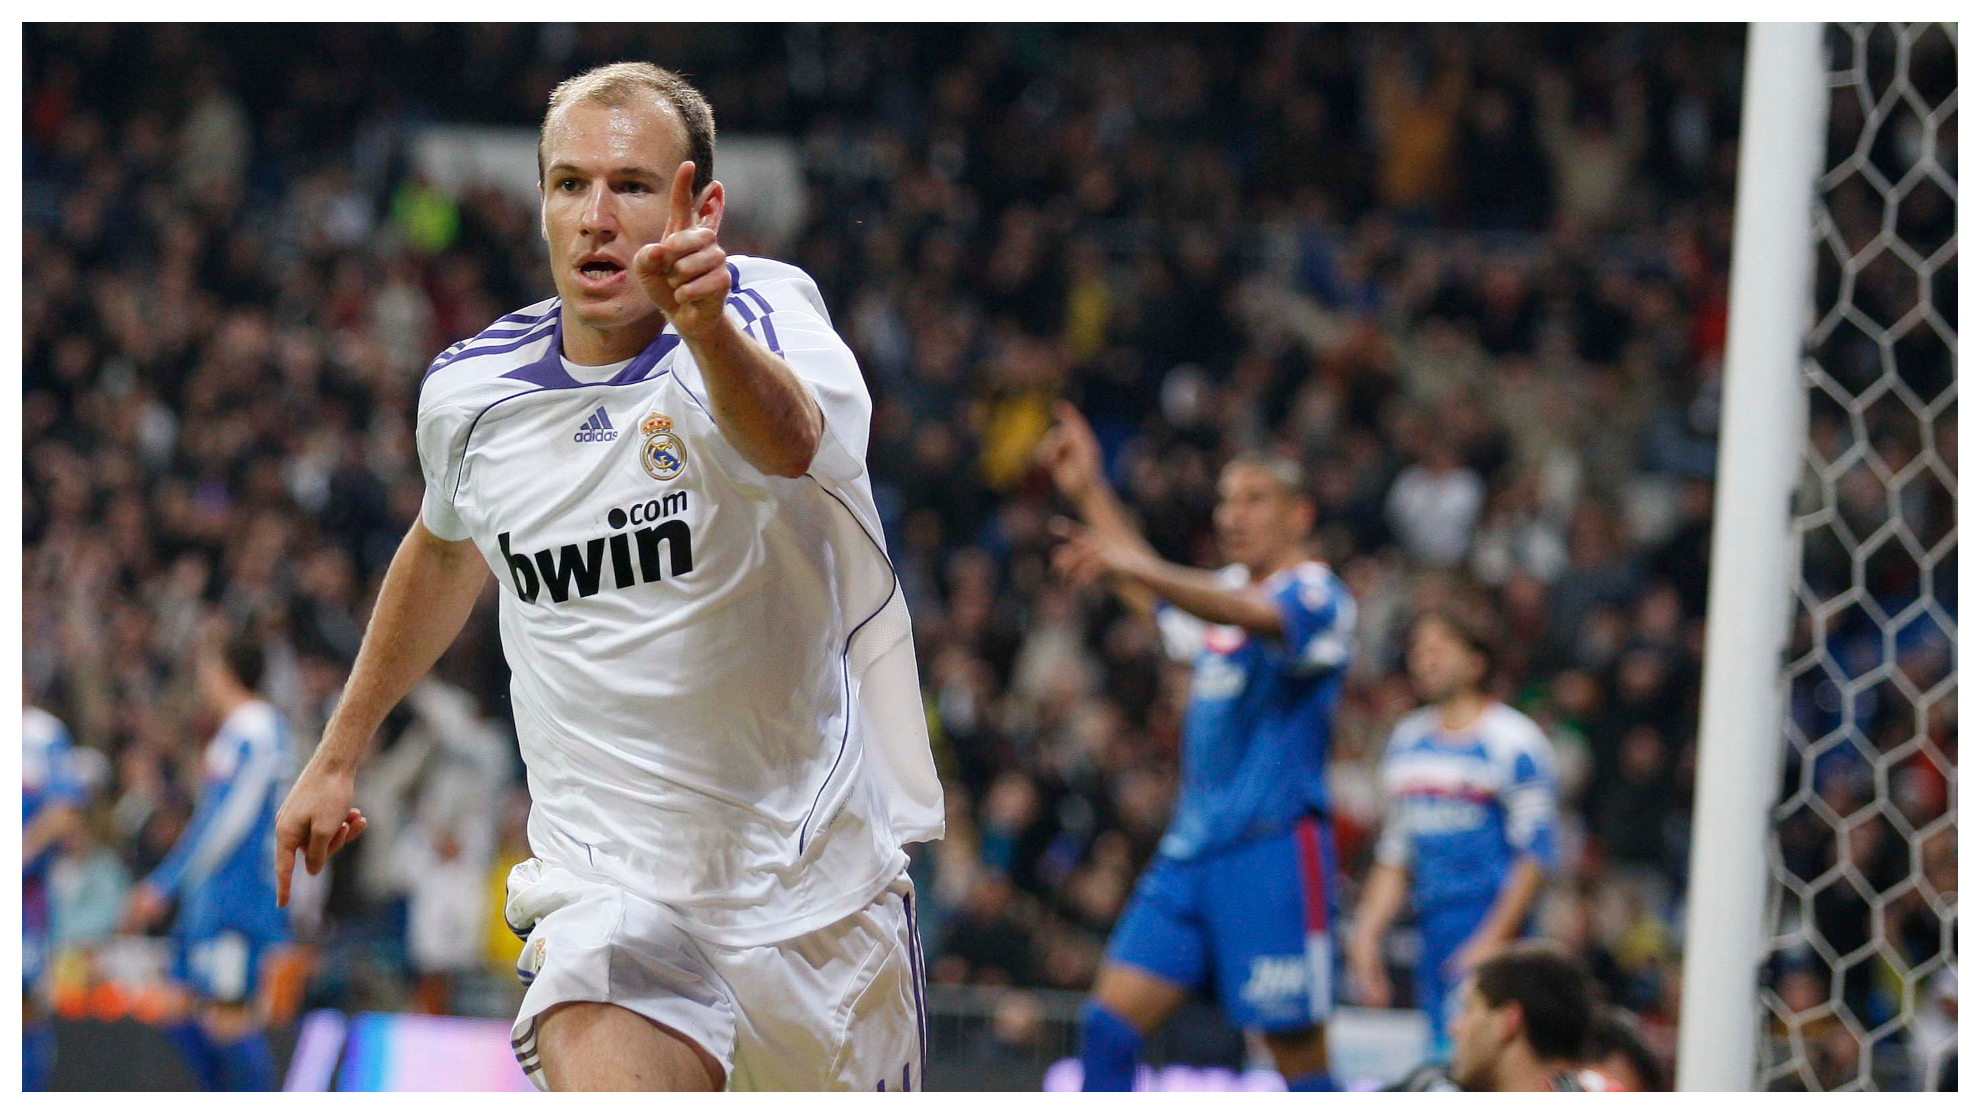 Robben celebra el gol al Getafe que, poco despus, sera anulado.